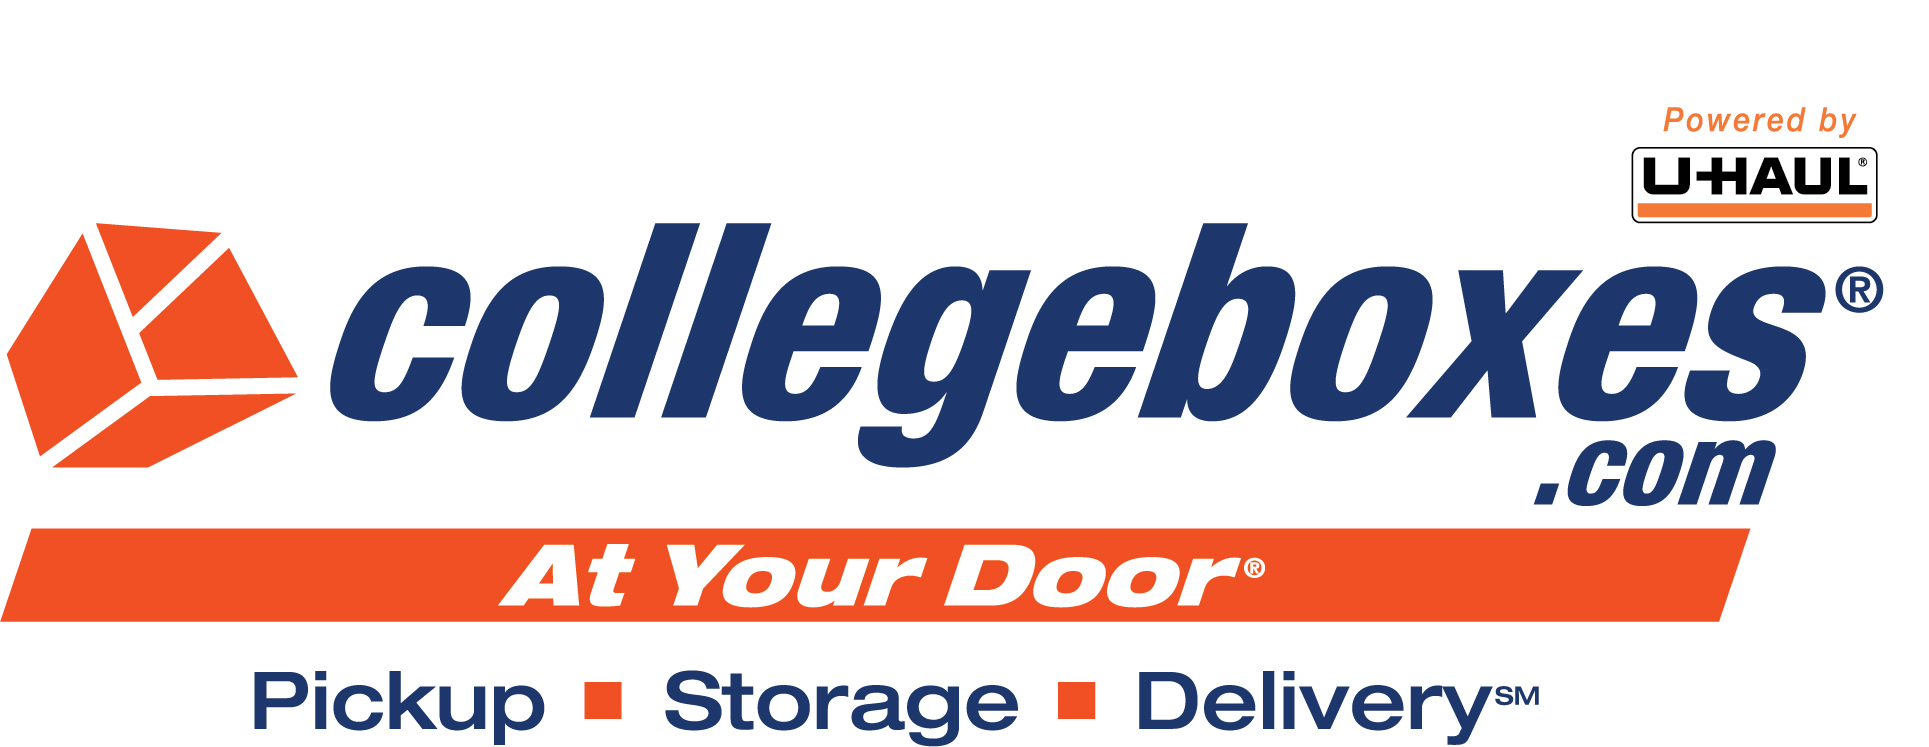 Collegboxes logo